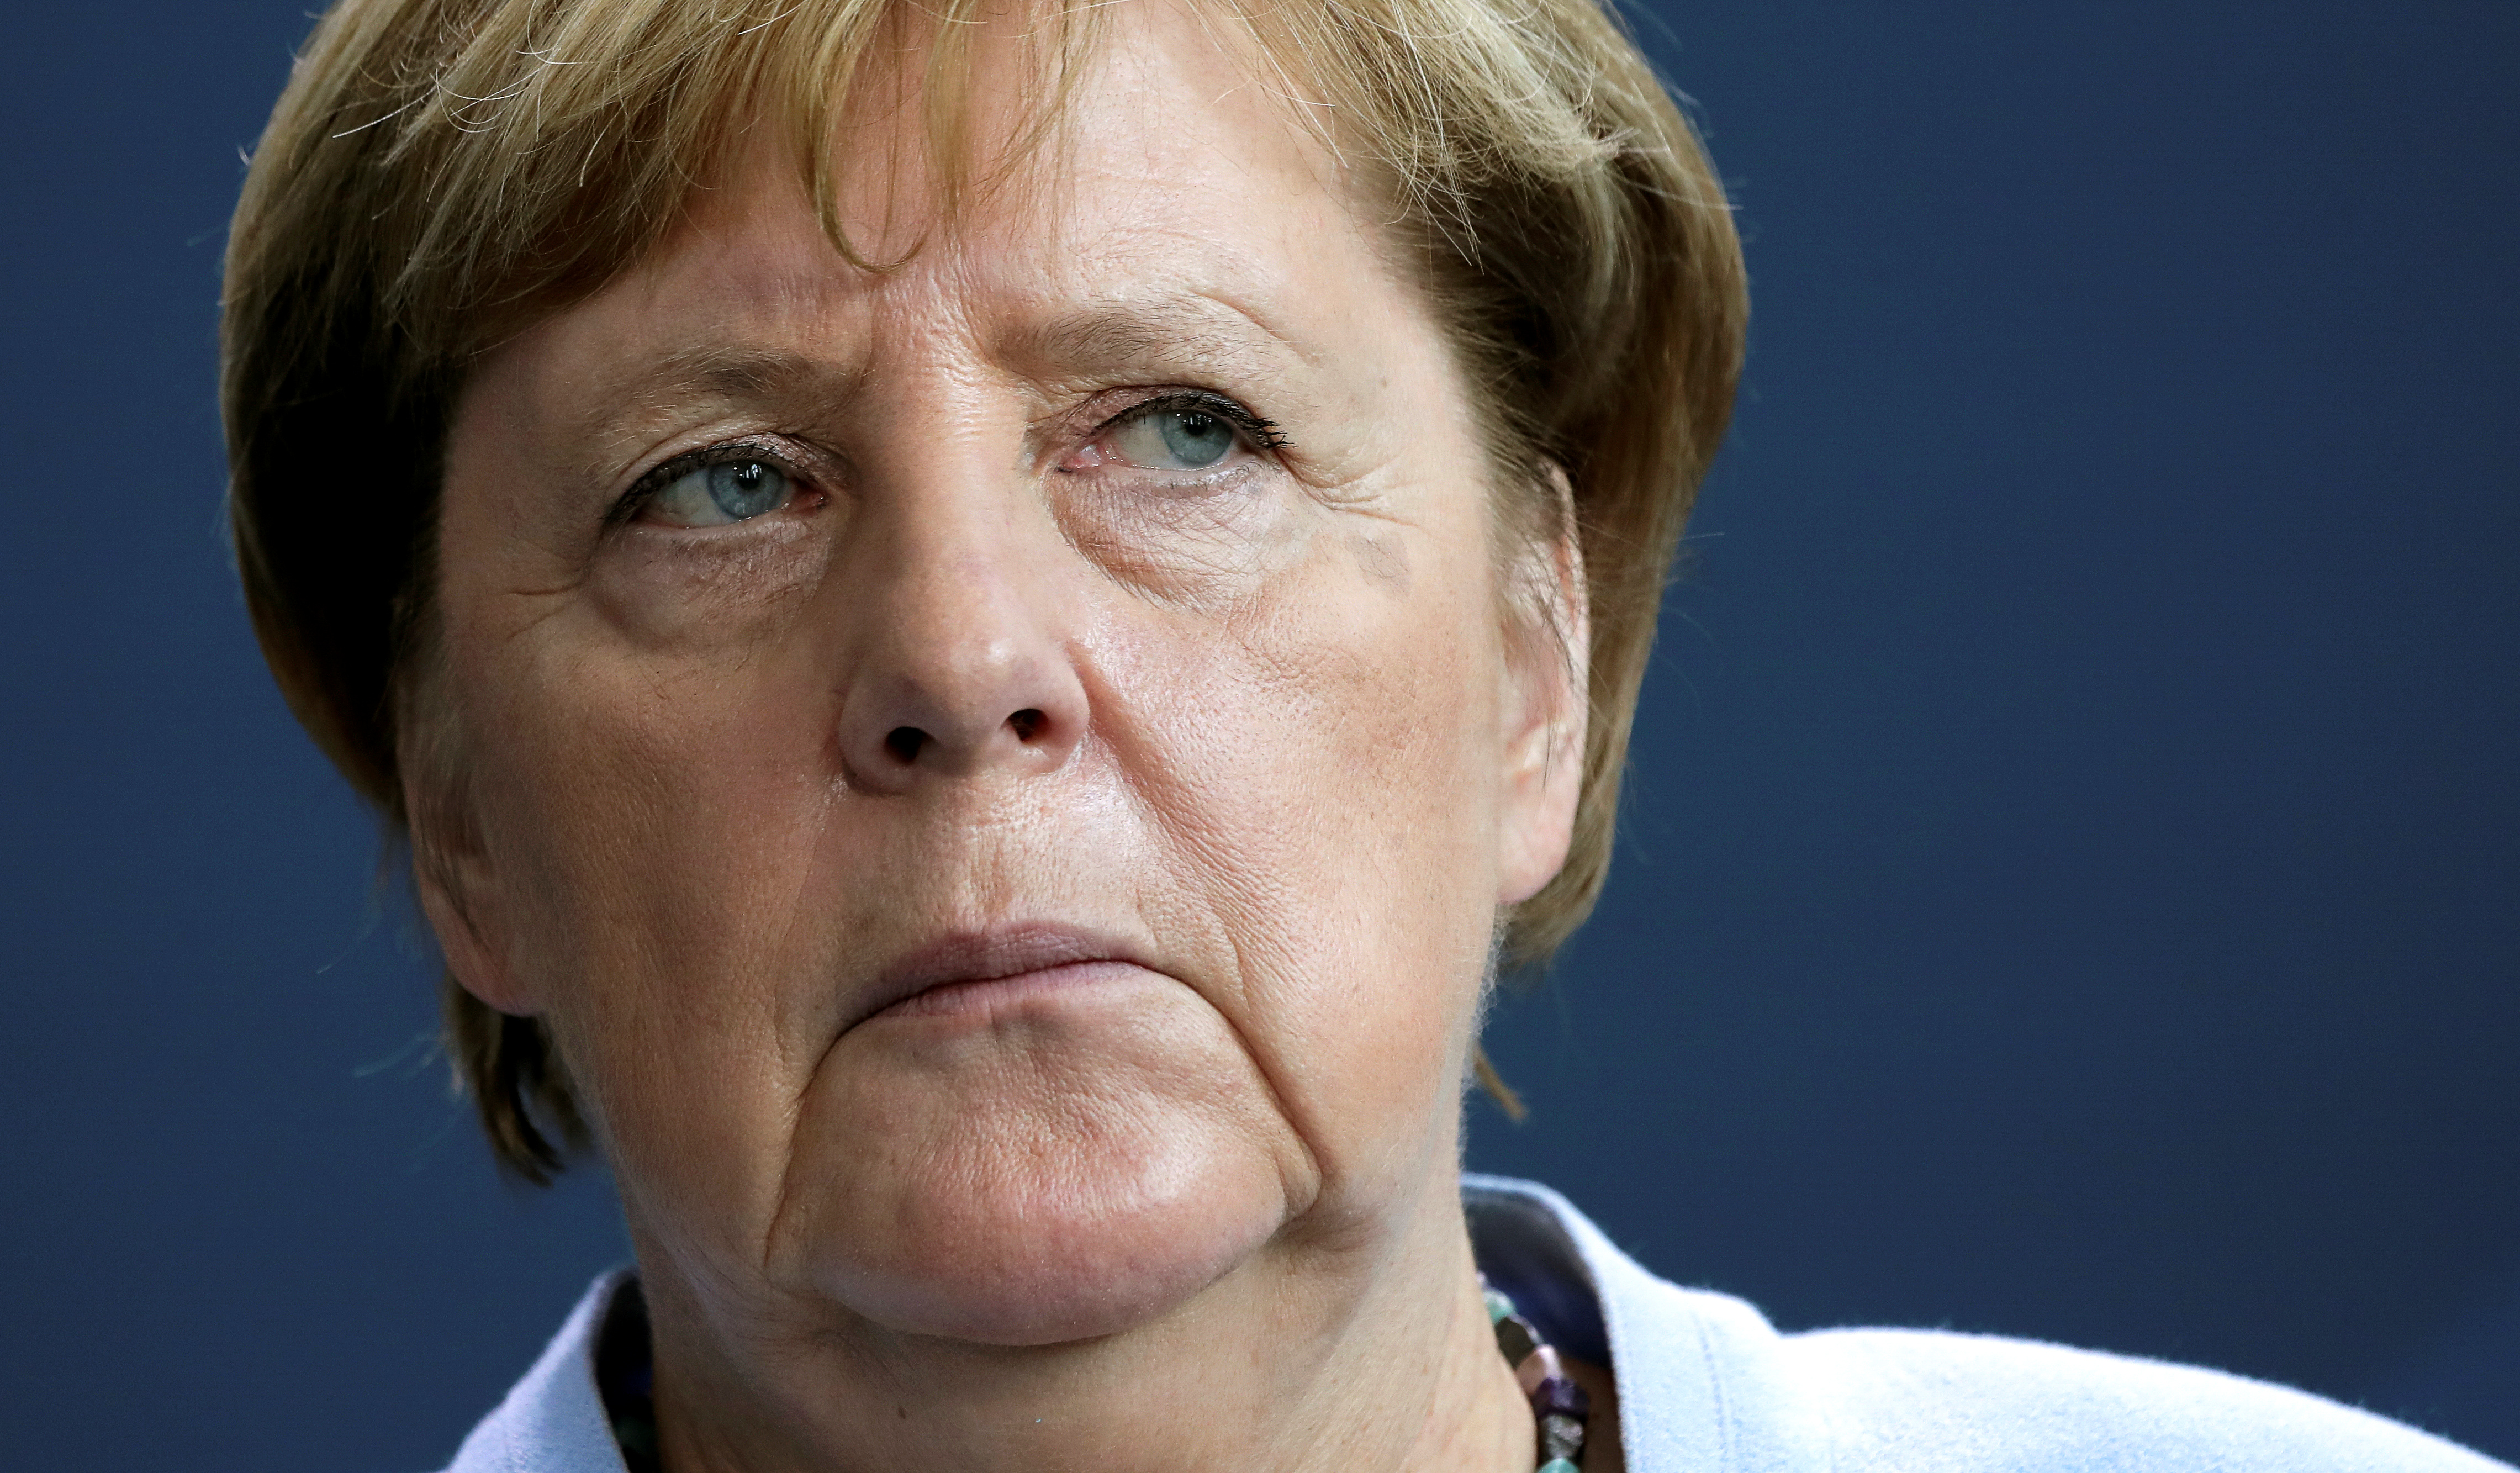 La canciller alemana Angela Merkel durante una conferencia de prensa en Berlín el pasado 3 de septiembre (Michael Sohn via REUTERS)